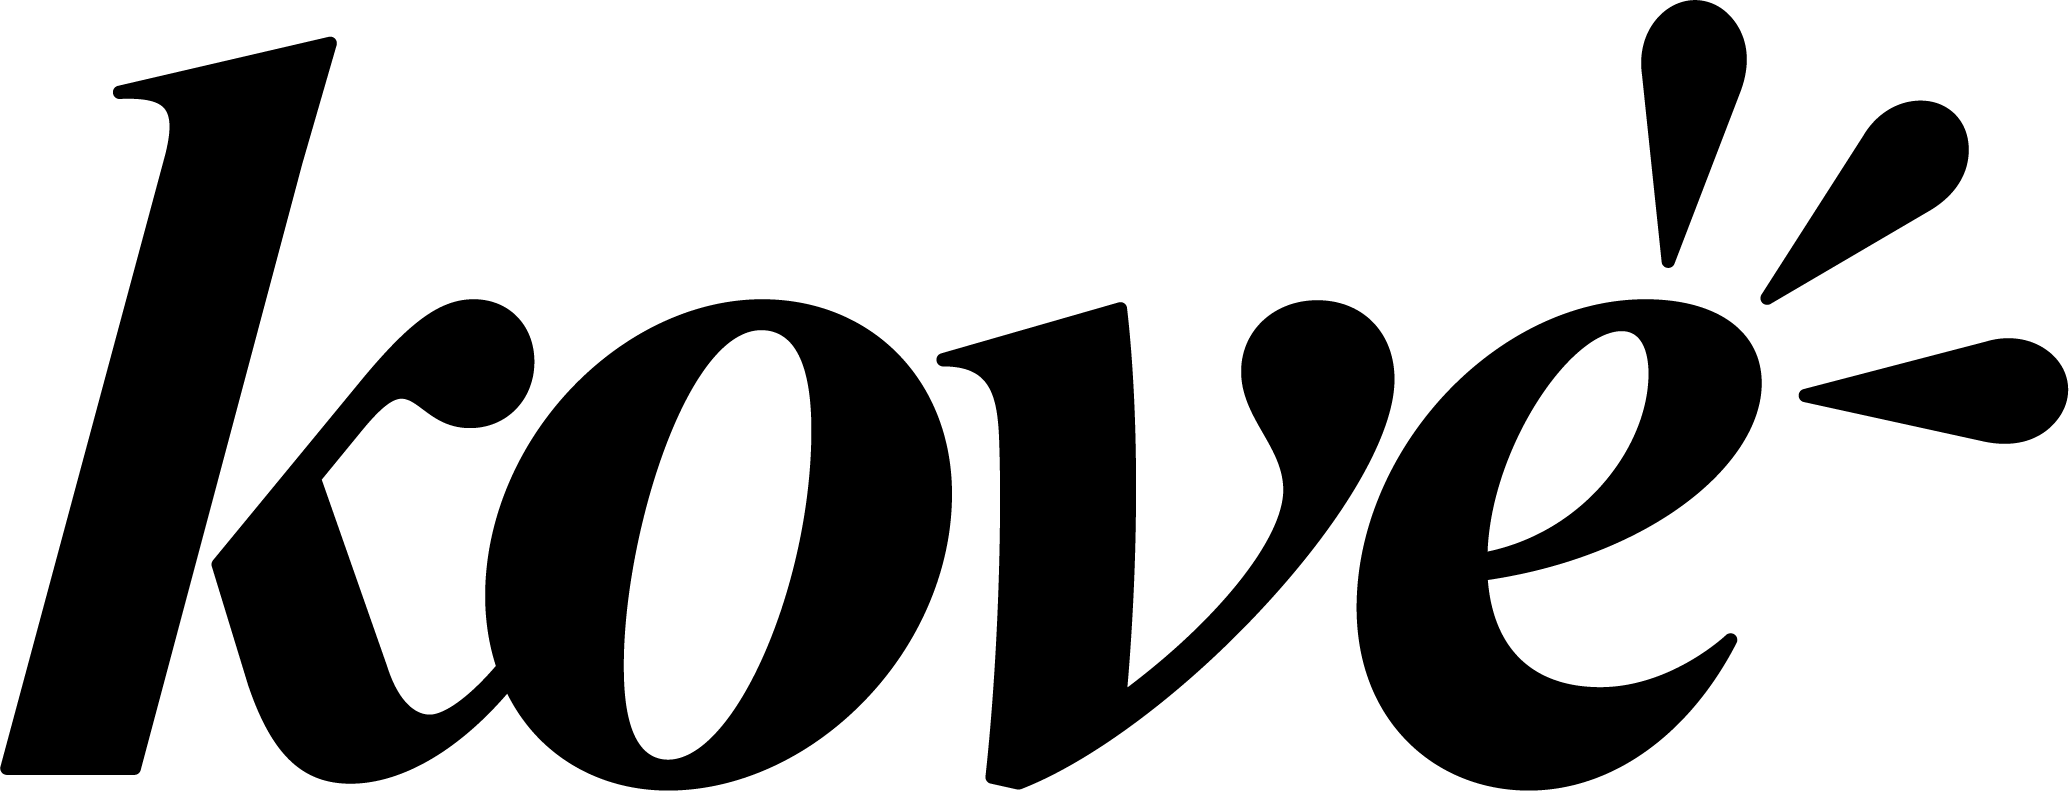 Kove’s logo